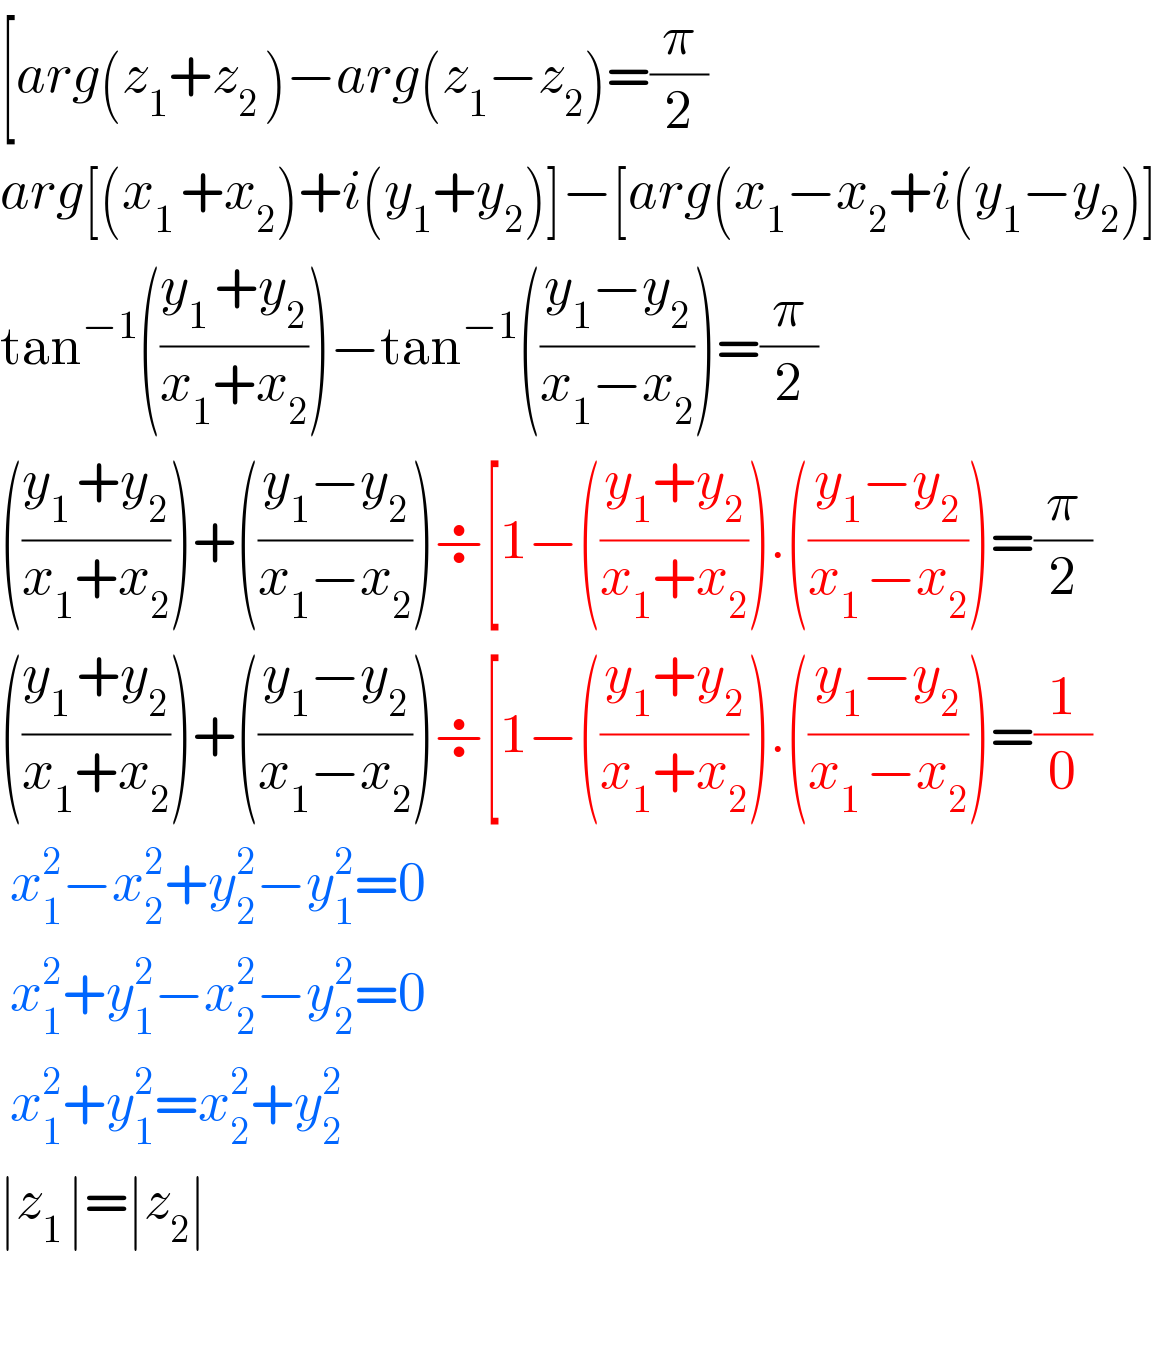 [arg(z_1 +z_(2 ) )−arg(z_1 −z_2 )=(π/2)  arg[(x_(1 ) +x_2 )+i(y_1 +y_2 )]−[arg(x_1 −x_2 +i(y_1 −y_2 )]  tan^(−1) (((y_(1 ) +y_2 )/(x_1 +x_2 )))−tan^(−1) (((y_1 −y_2 )/(x_1 −x_2 )))=(π/2)  (((y_(1 ) +y_2 )/(x_1 +x_2 )))+(((y_1 −y_2 )/(x_1 −x_2 )))÷[1−(((y_1 +y_2 )/(x_1 +x_2 ))).(((y_1 −y_2 )/(x_(1 ) −x_2 )))=(π/2)  (((y_(1 ) +y_2 )/(x_1 +x_2 )))+(((y_1 −y_2 )/(x_1 −x_2 )))÷[1−(((y_1 +y_2 )/(x_1 +x_2 ))).(((y_1 −y_2 )/(x_(1 ) −x_2 )))=(1/0)   x_1 ^2 −x_2 ^2 +y_2 ^2 −y_1 ^2 =0               x_1 ^2 +y_1 ^2 −x_2 ^2 −y_2 ^2 =0               x_1 ^2 +y_1 ^2 =x_2 ^2 +y_(2  ) ^2               ∣z_(1 ) ∣=∣z_2 ∣    